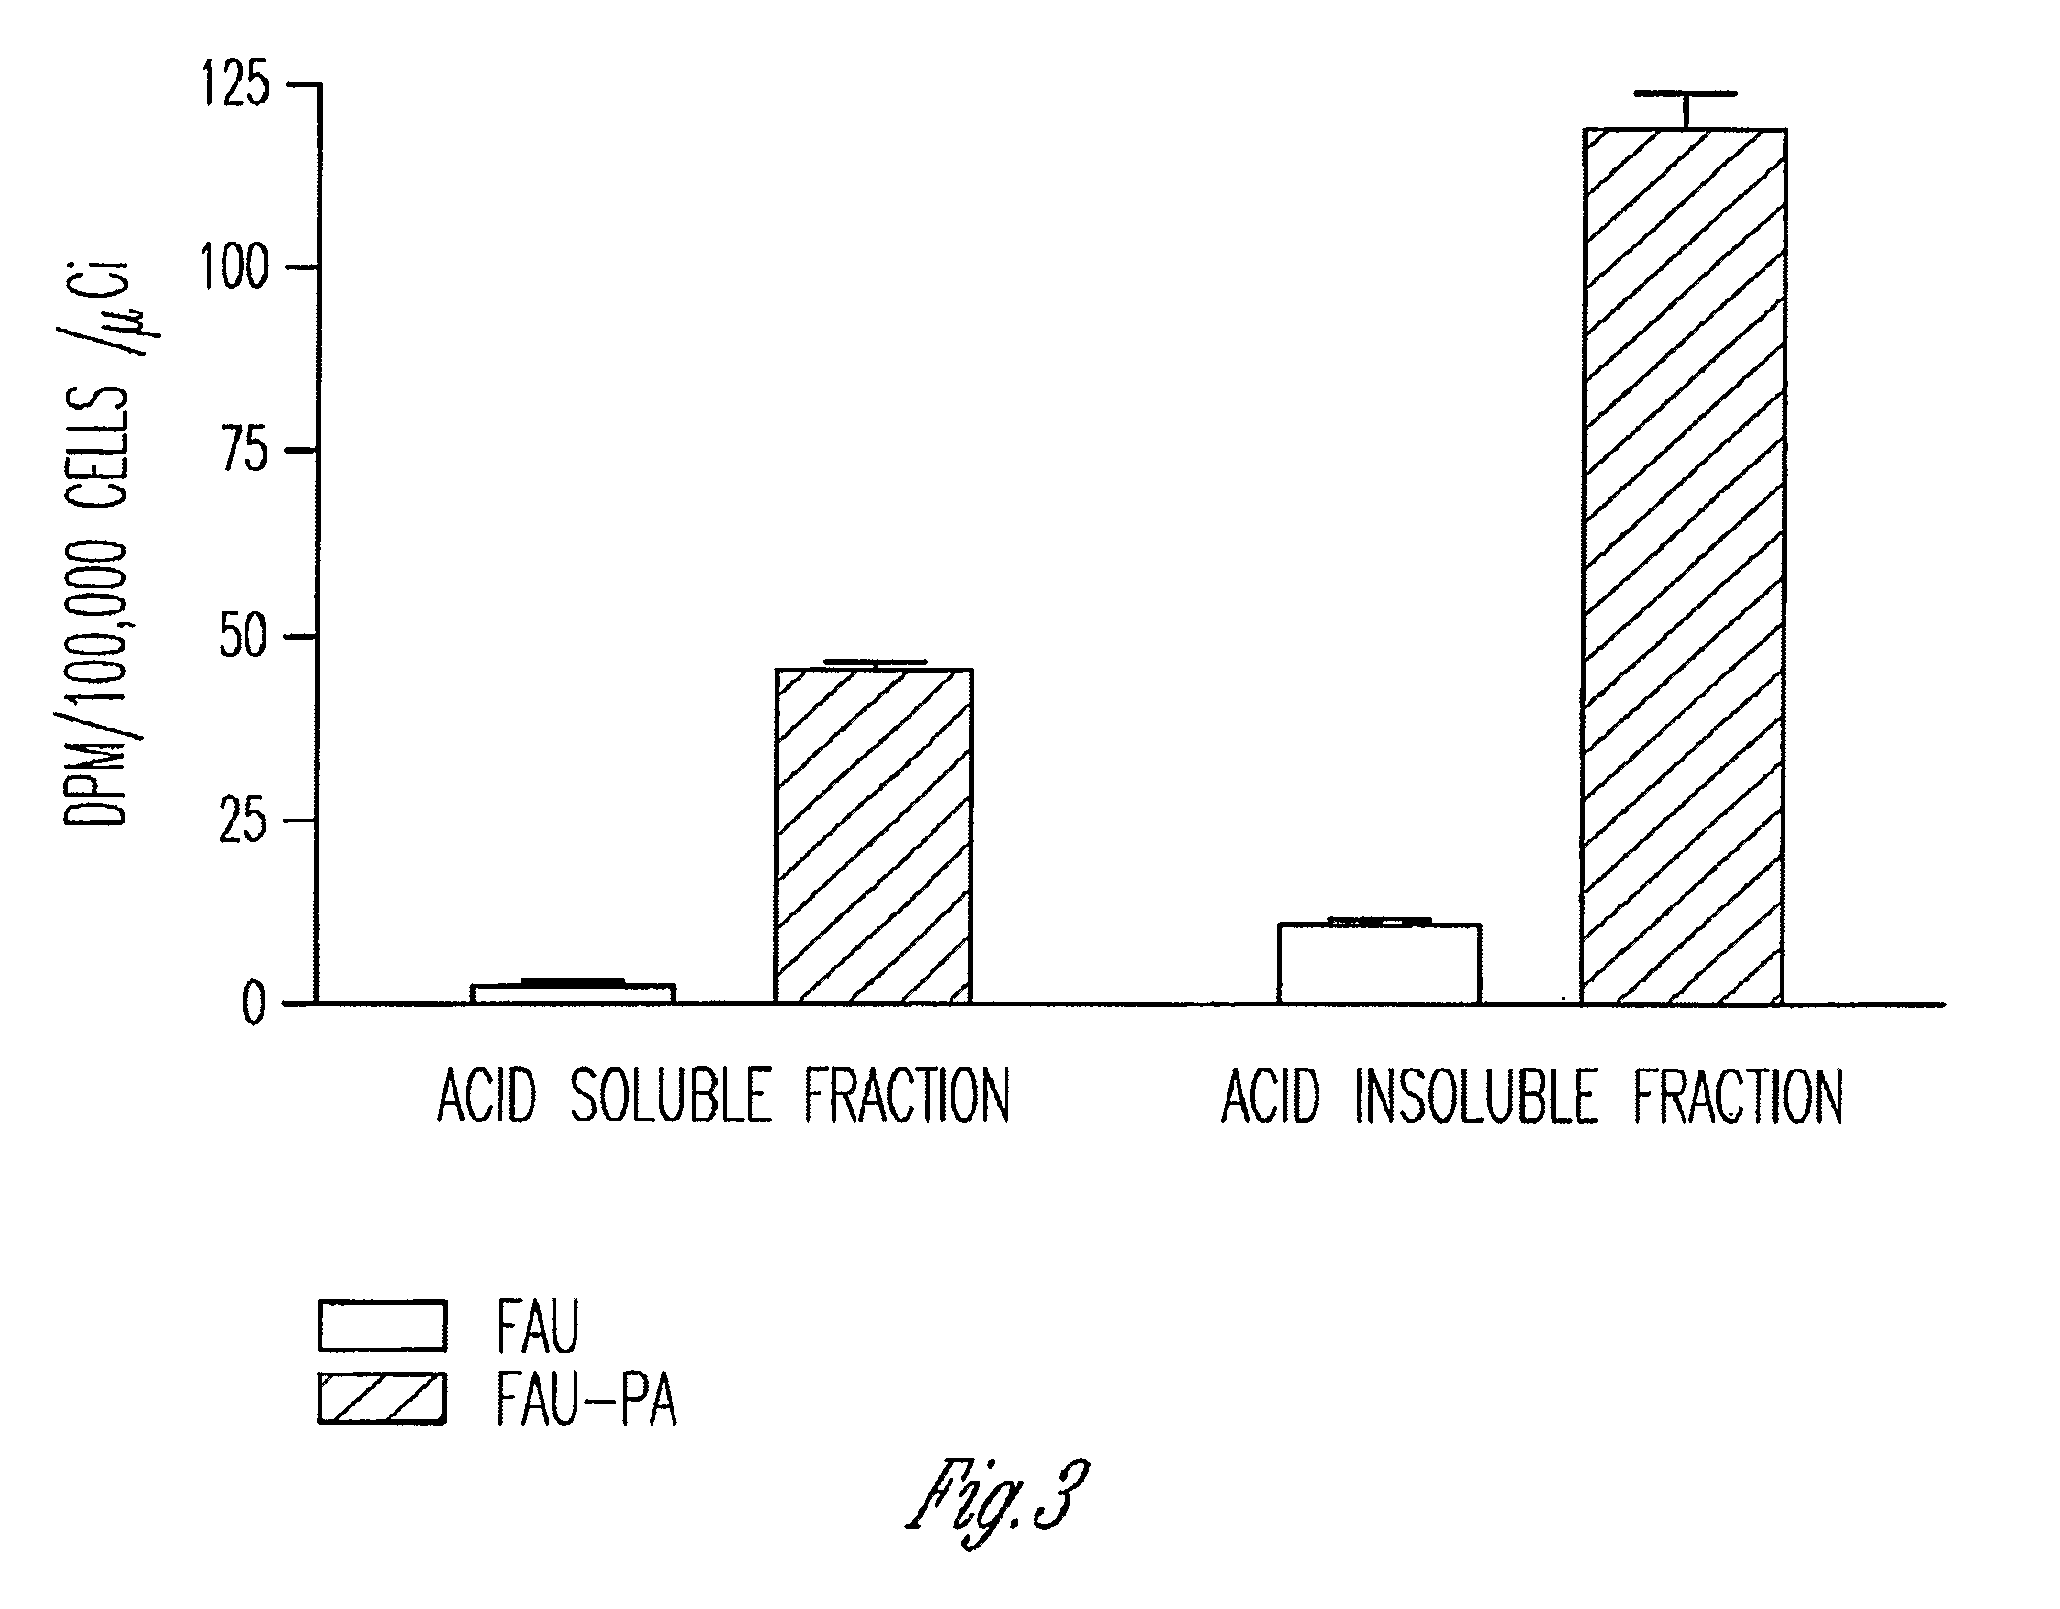 Phosphoramidate derivatives of FAU